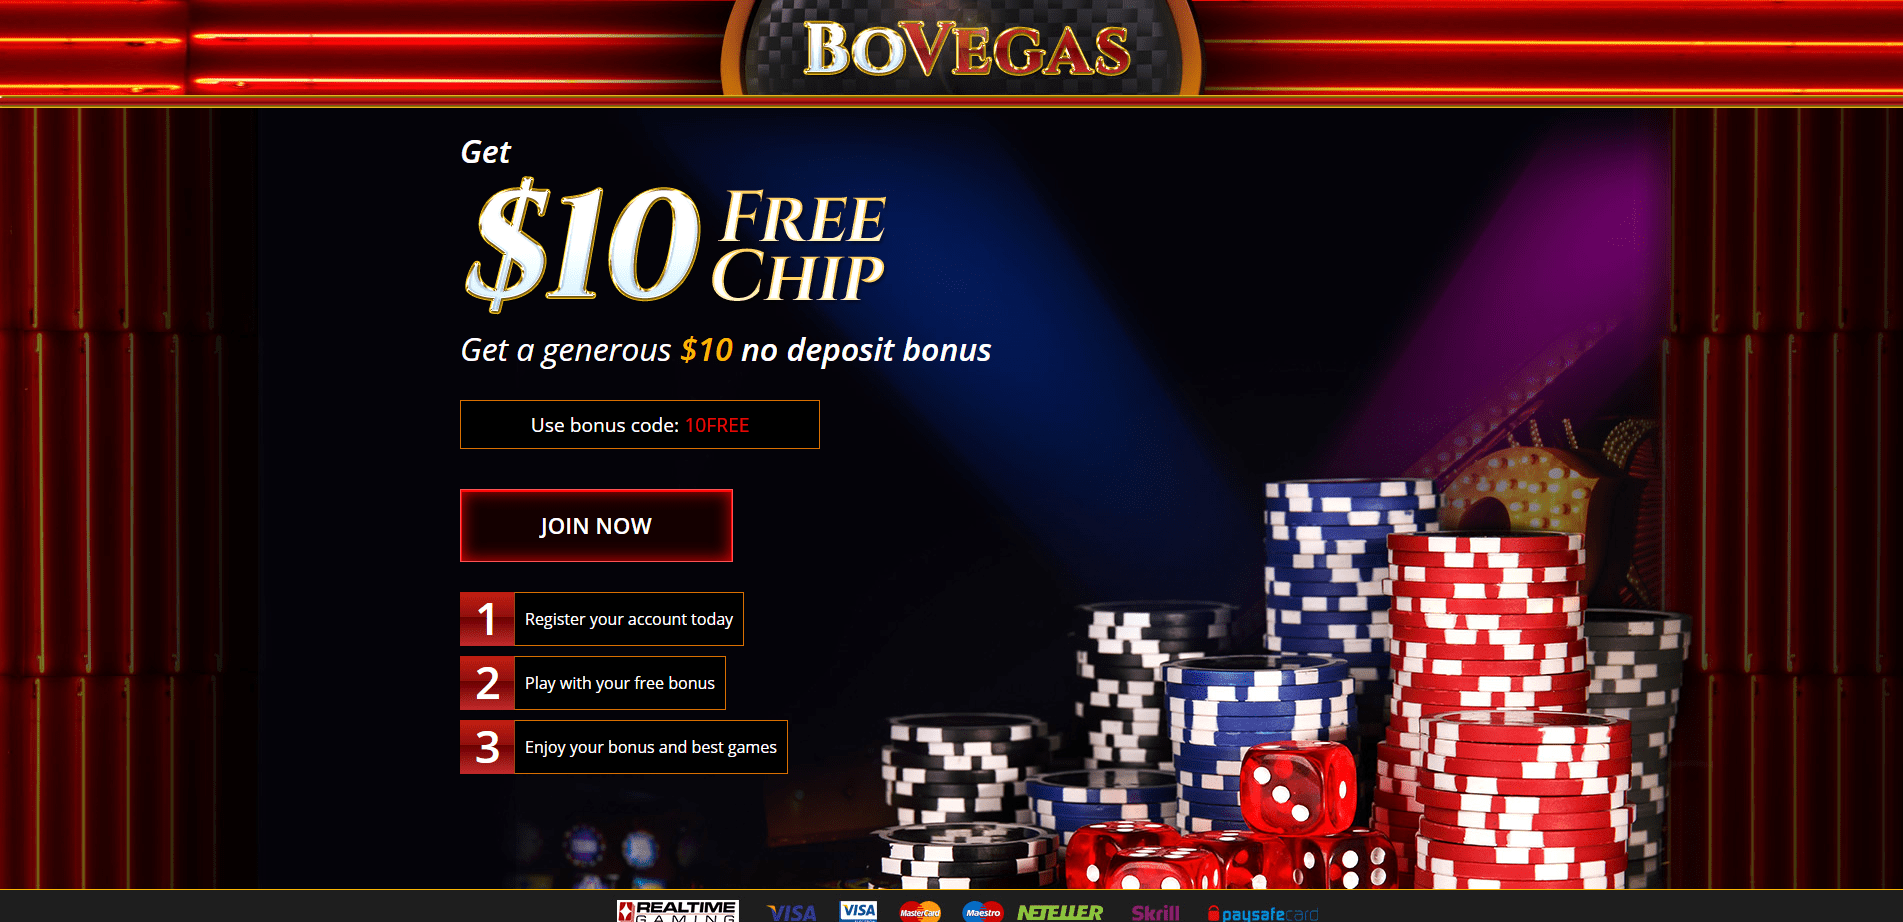 online casino bonus codes no deposit